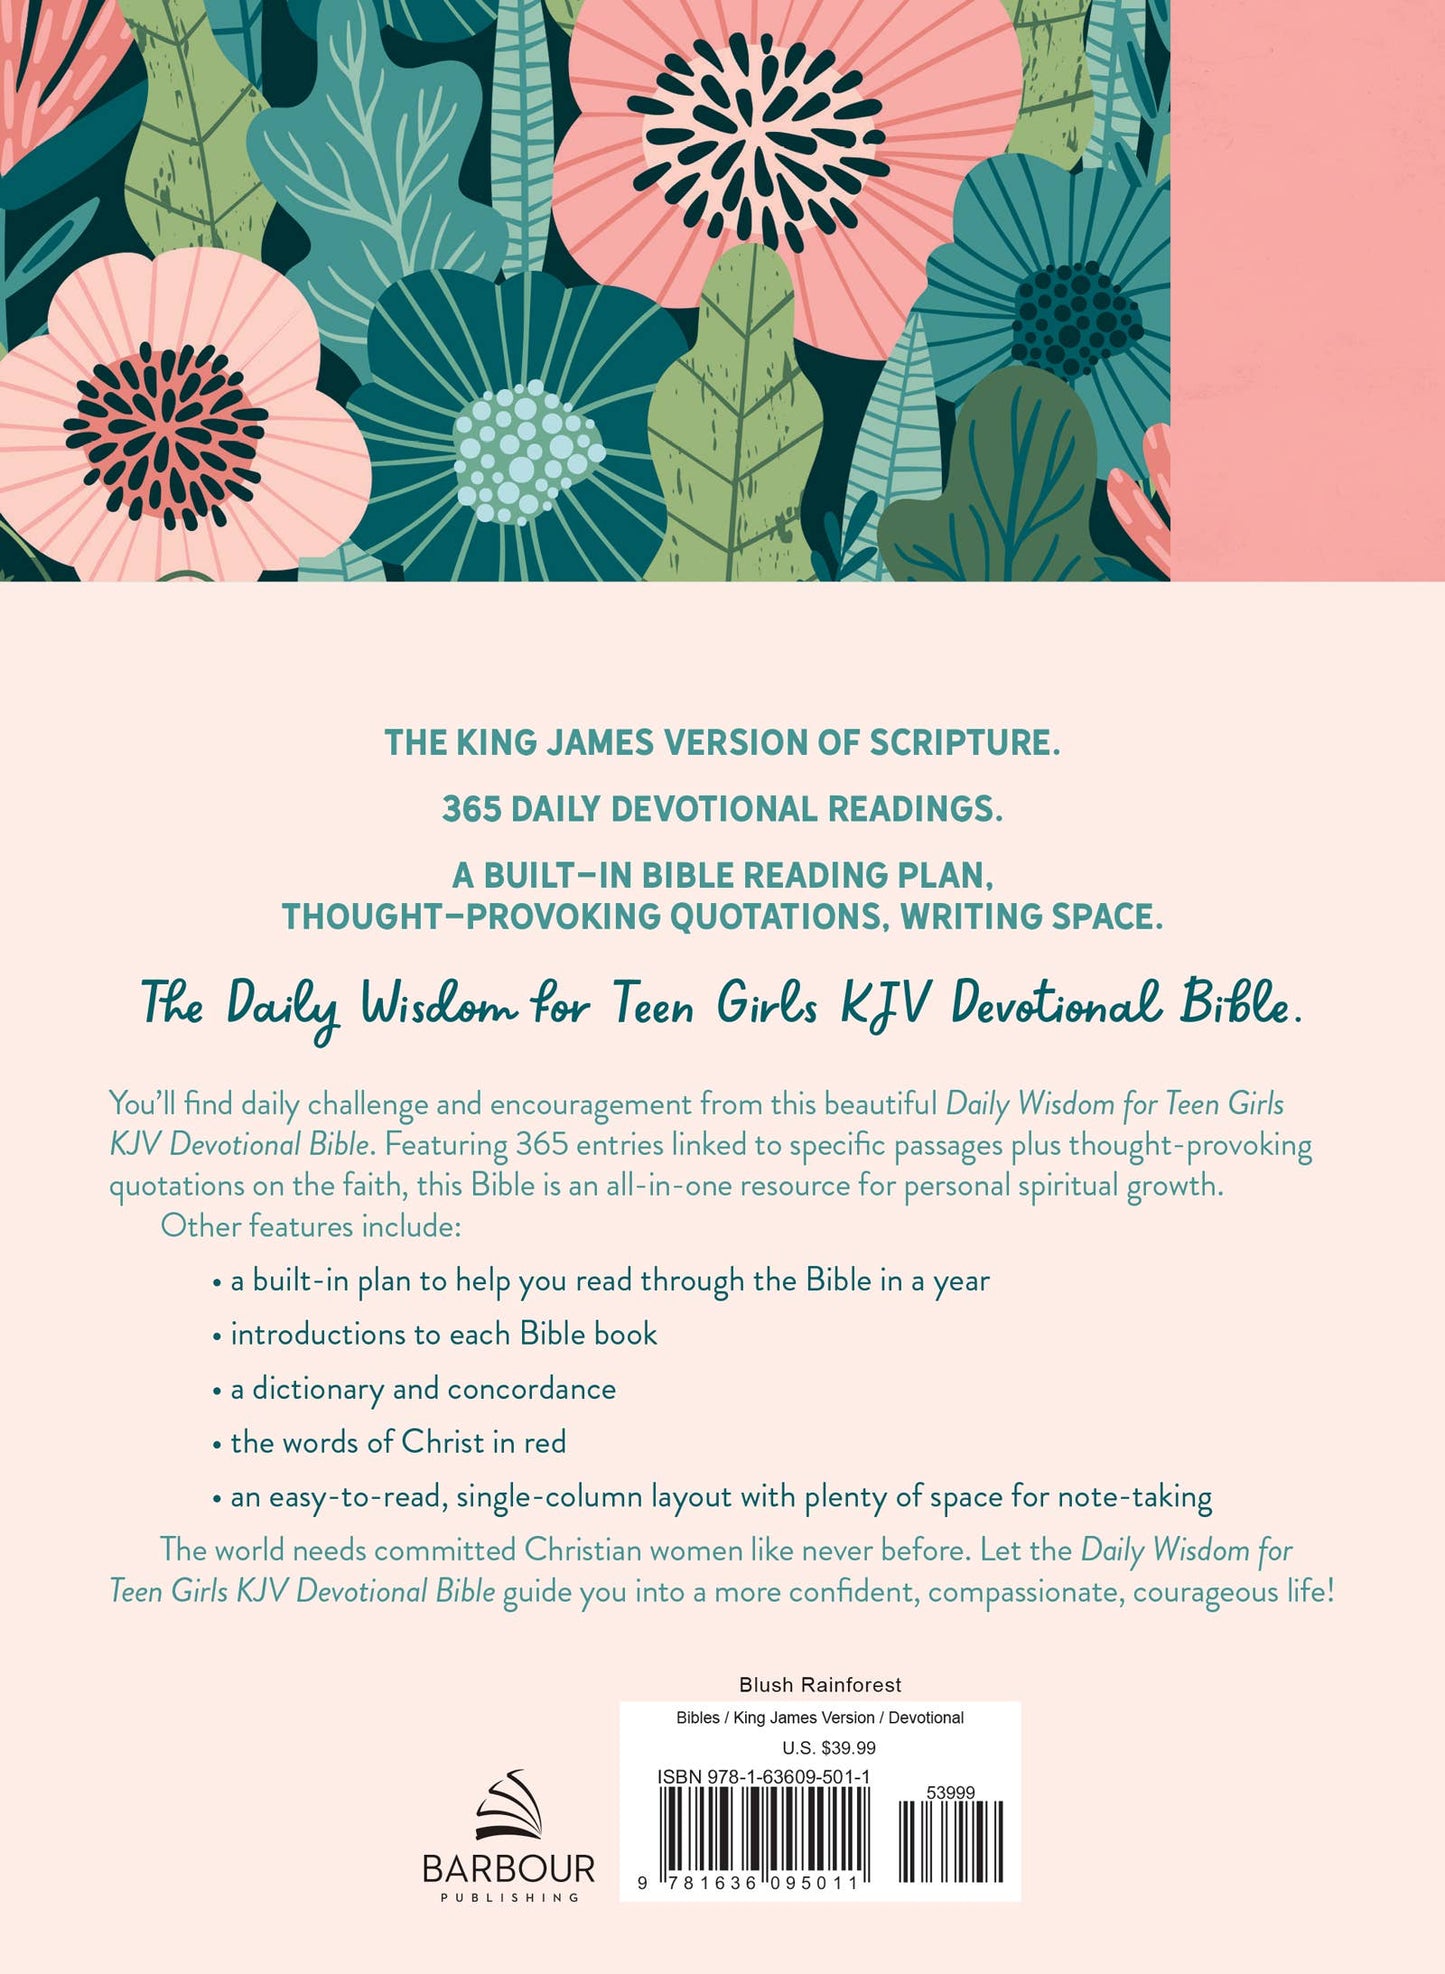 Daily Wisdom for Teen Girls KJV Devotional Bible